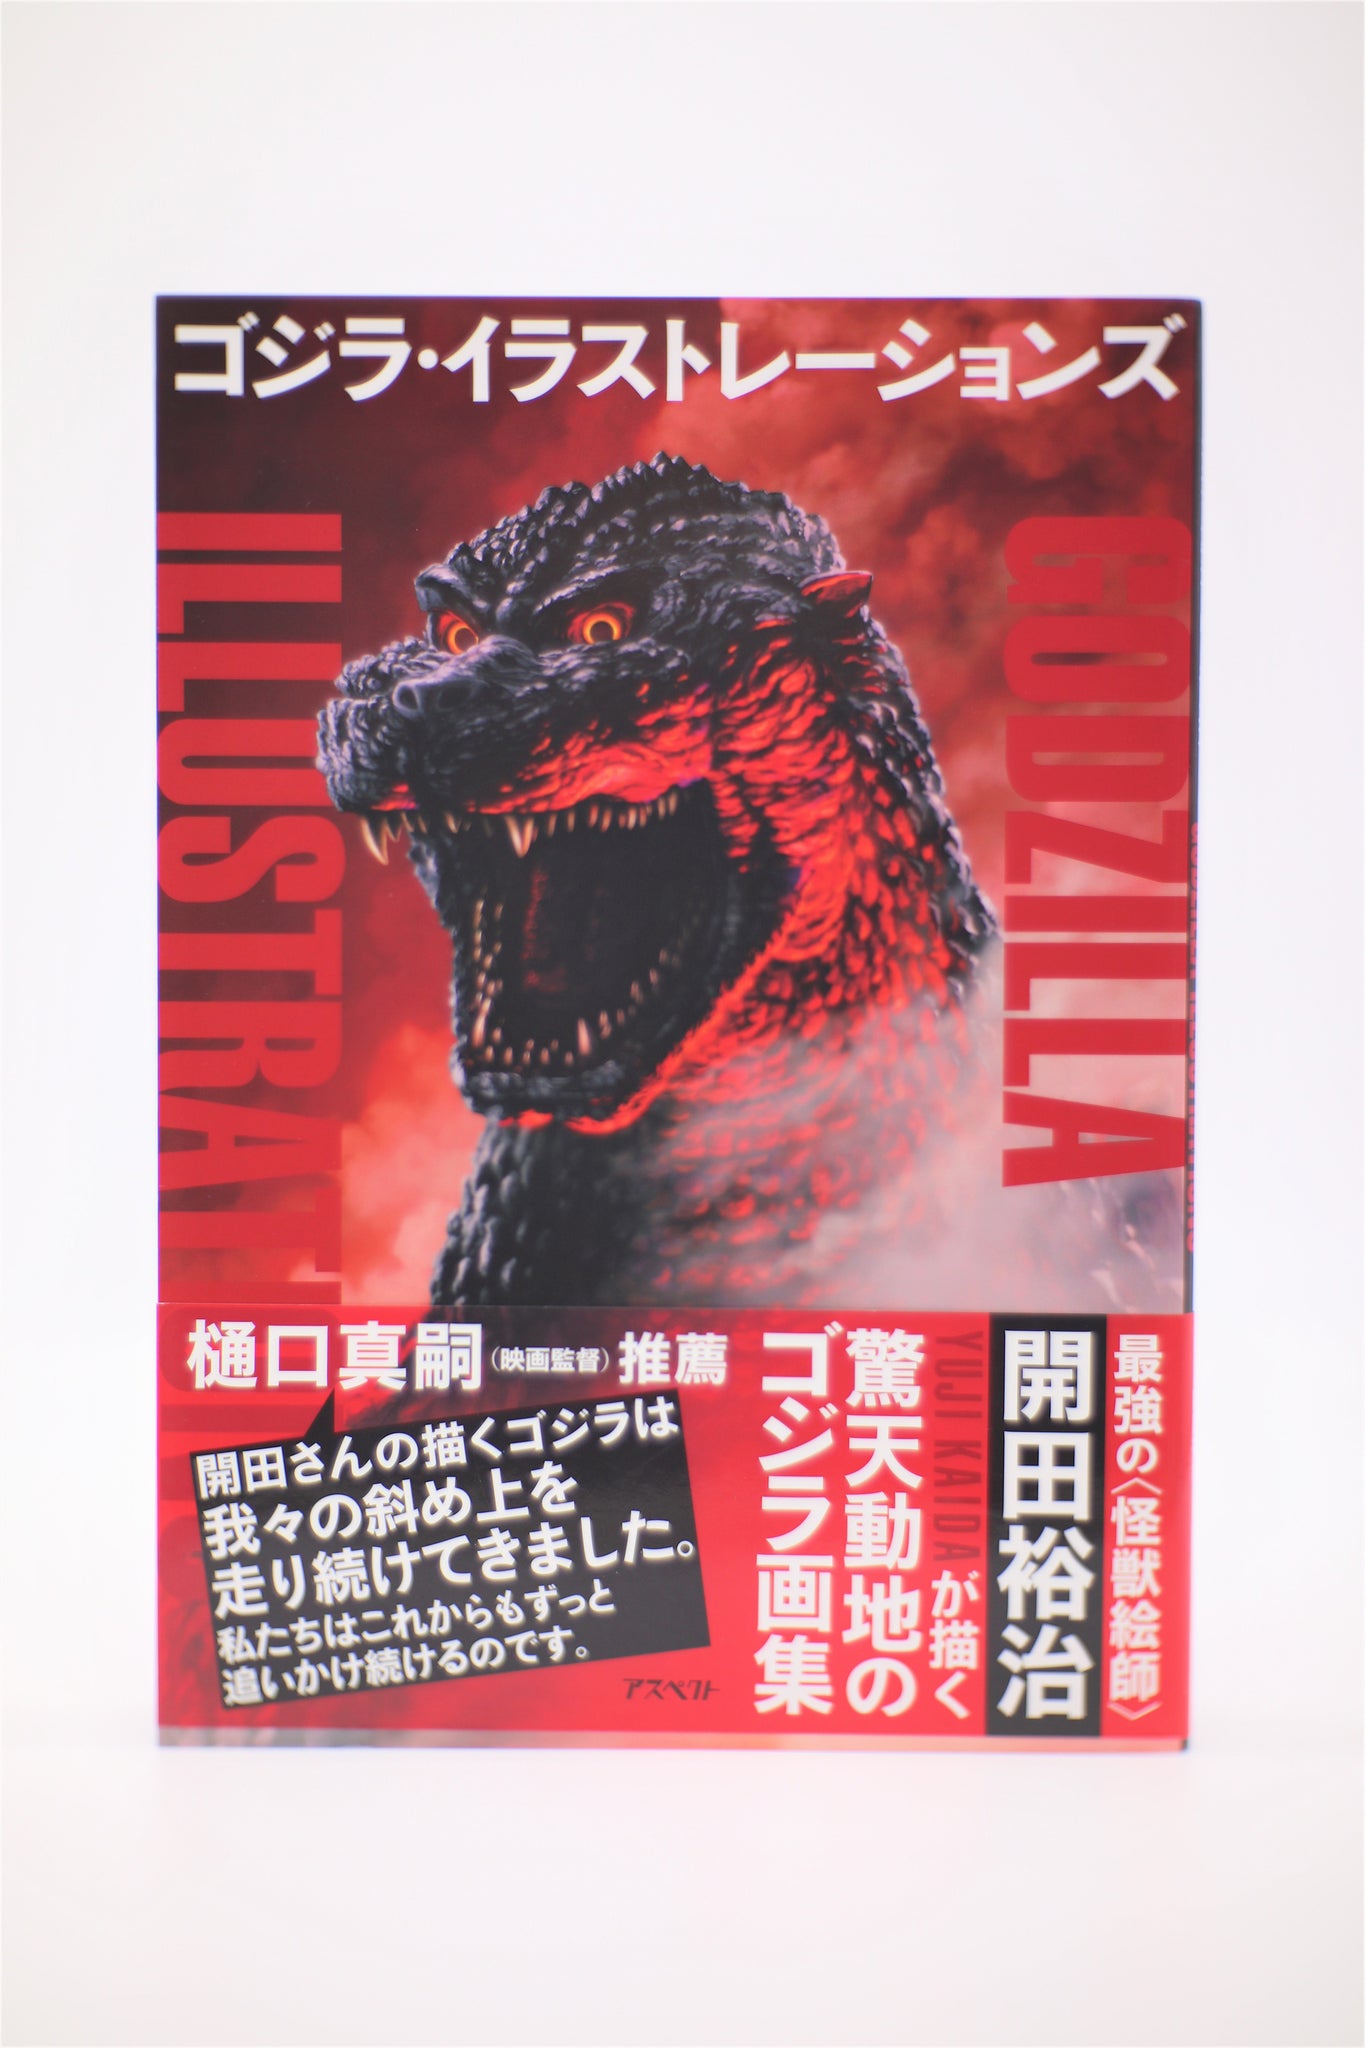 Godzilla Illustrations Yuji Kaida book Japanese